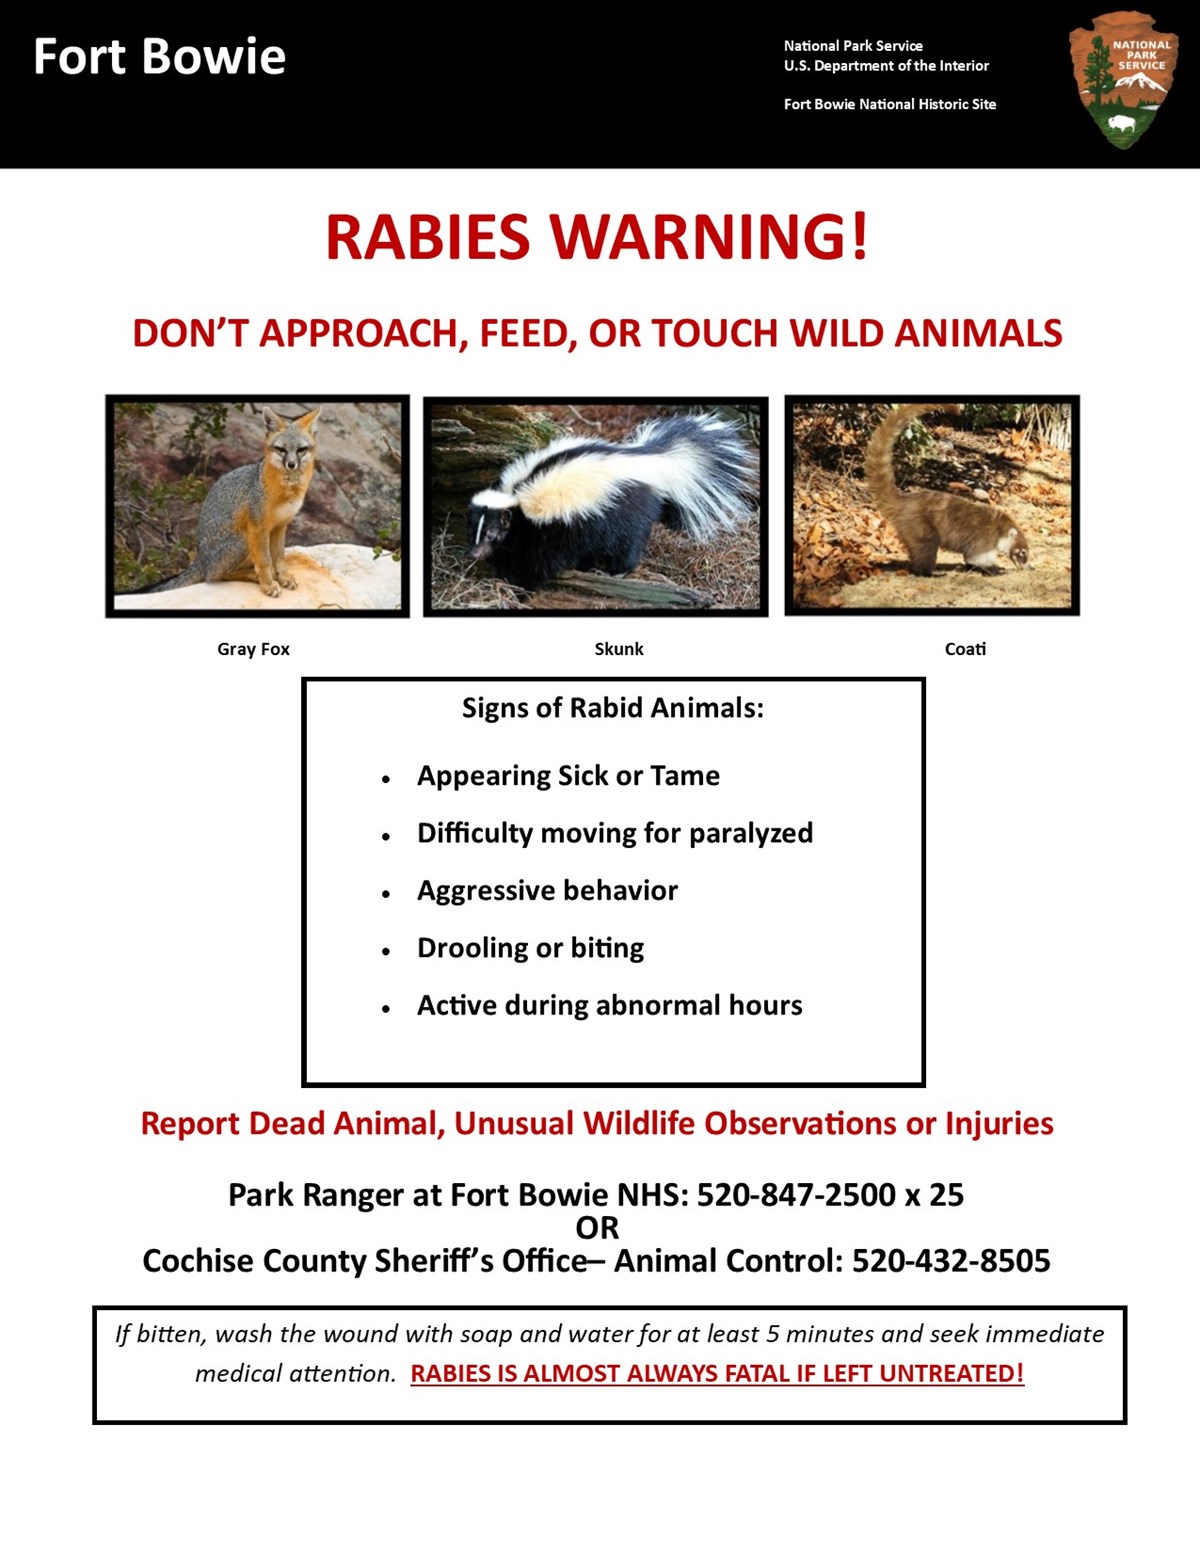 Information regarding rabies in southern Arizona